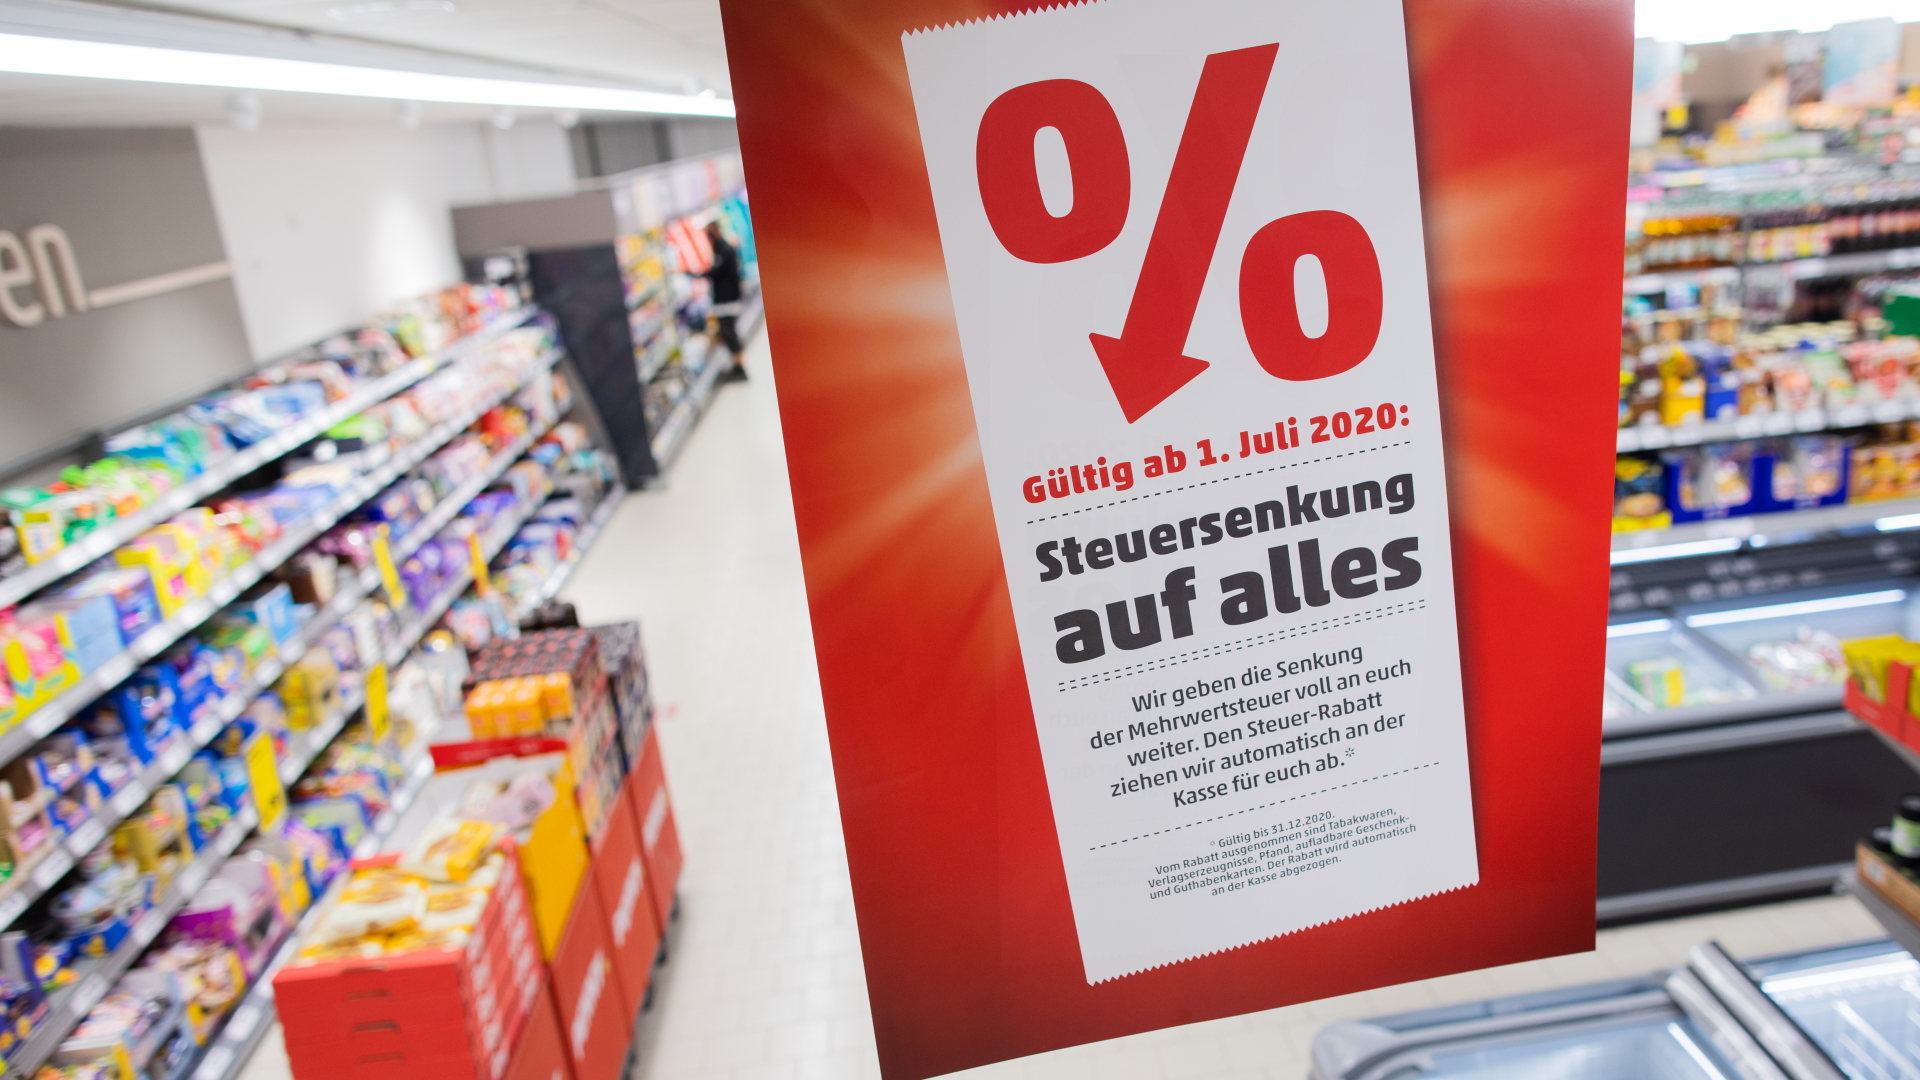 "Steuersenkung auf alles" steht auf einem Schild in einem Supermarkt.